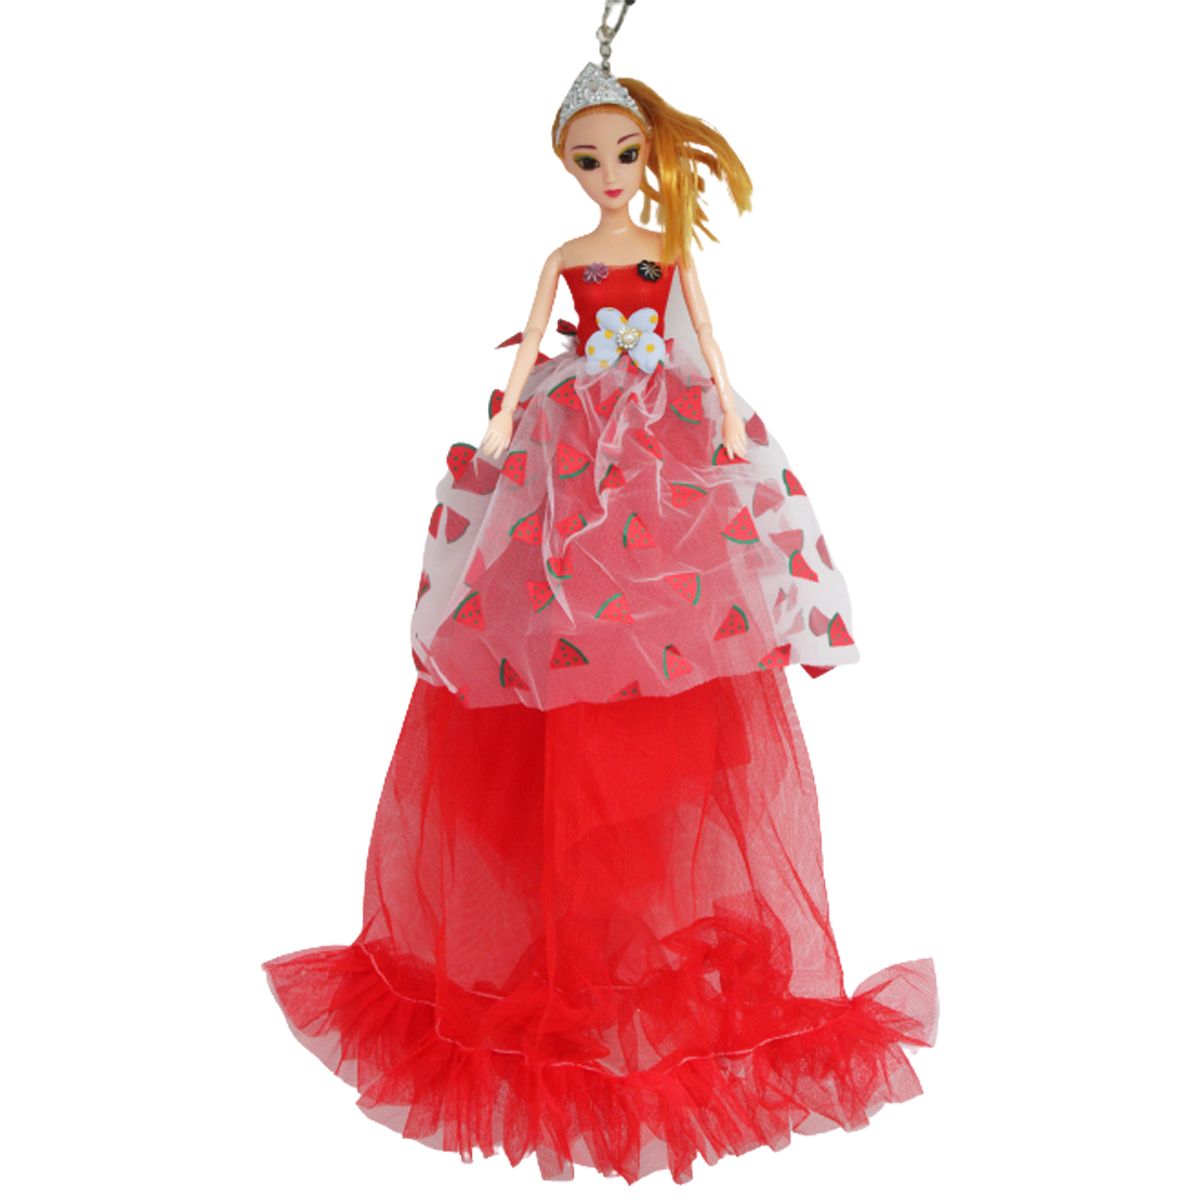 Лялька в бальній сукні "Кавуни", червона